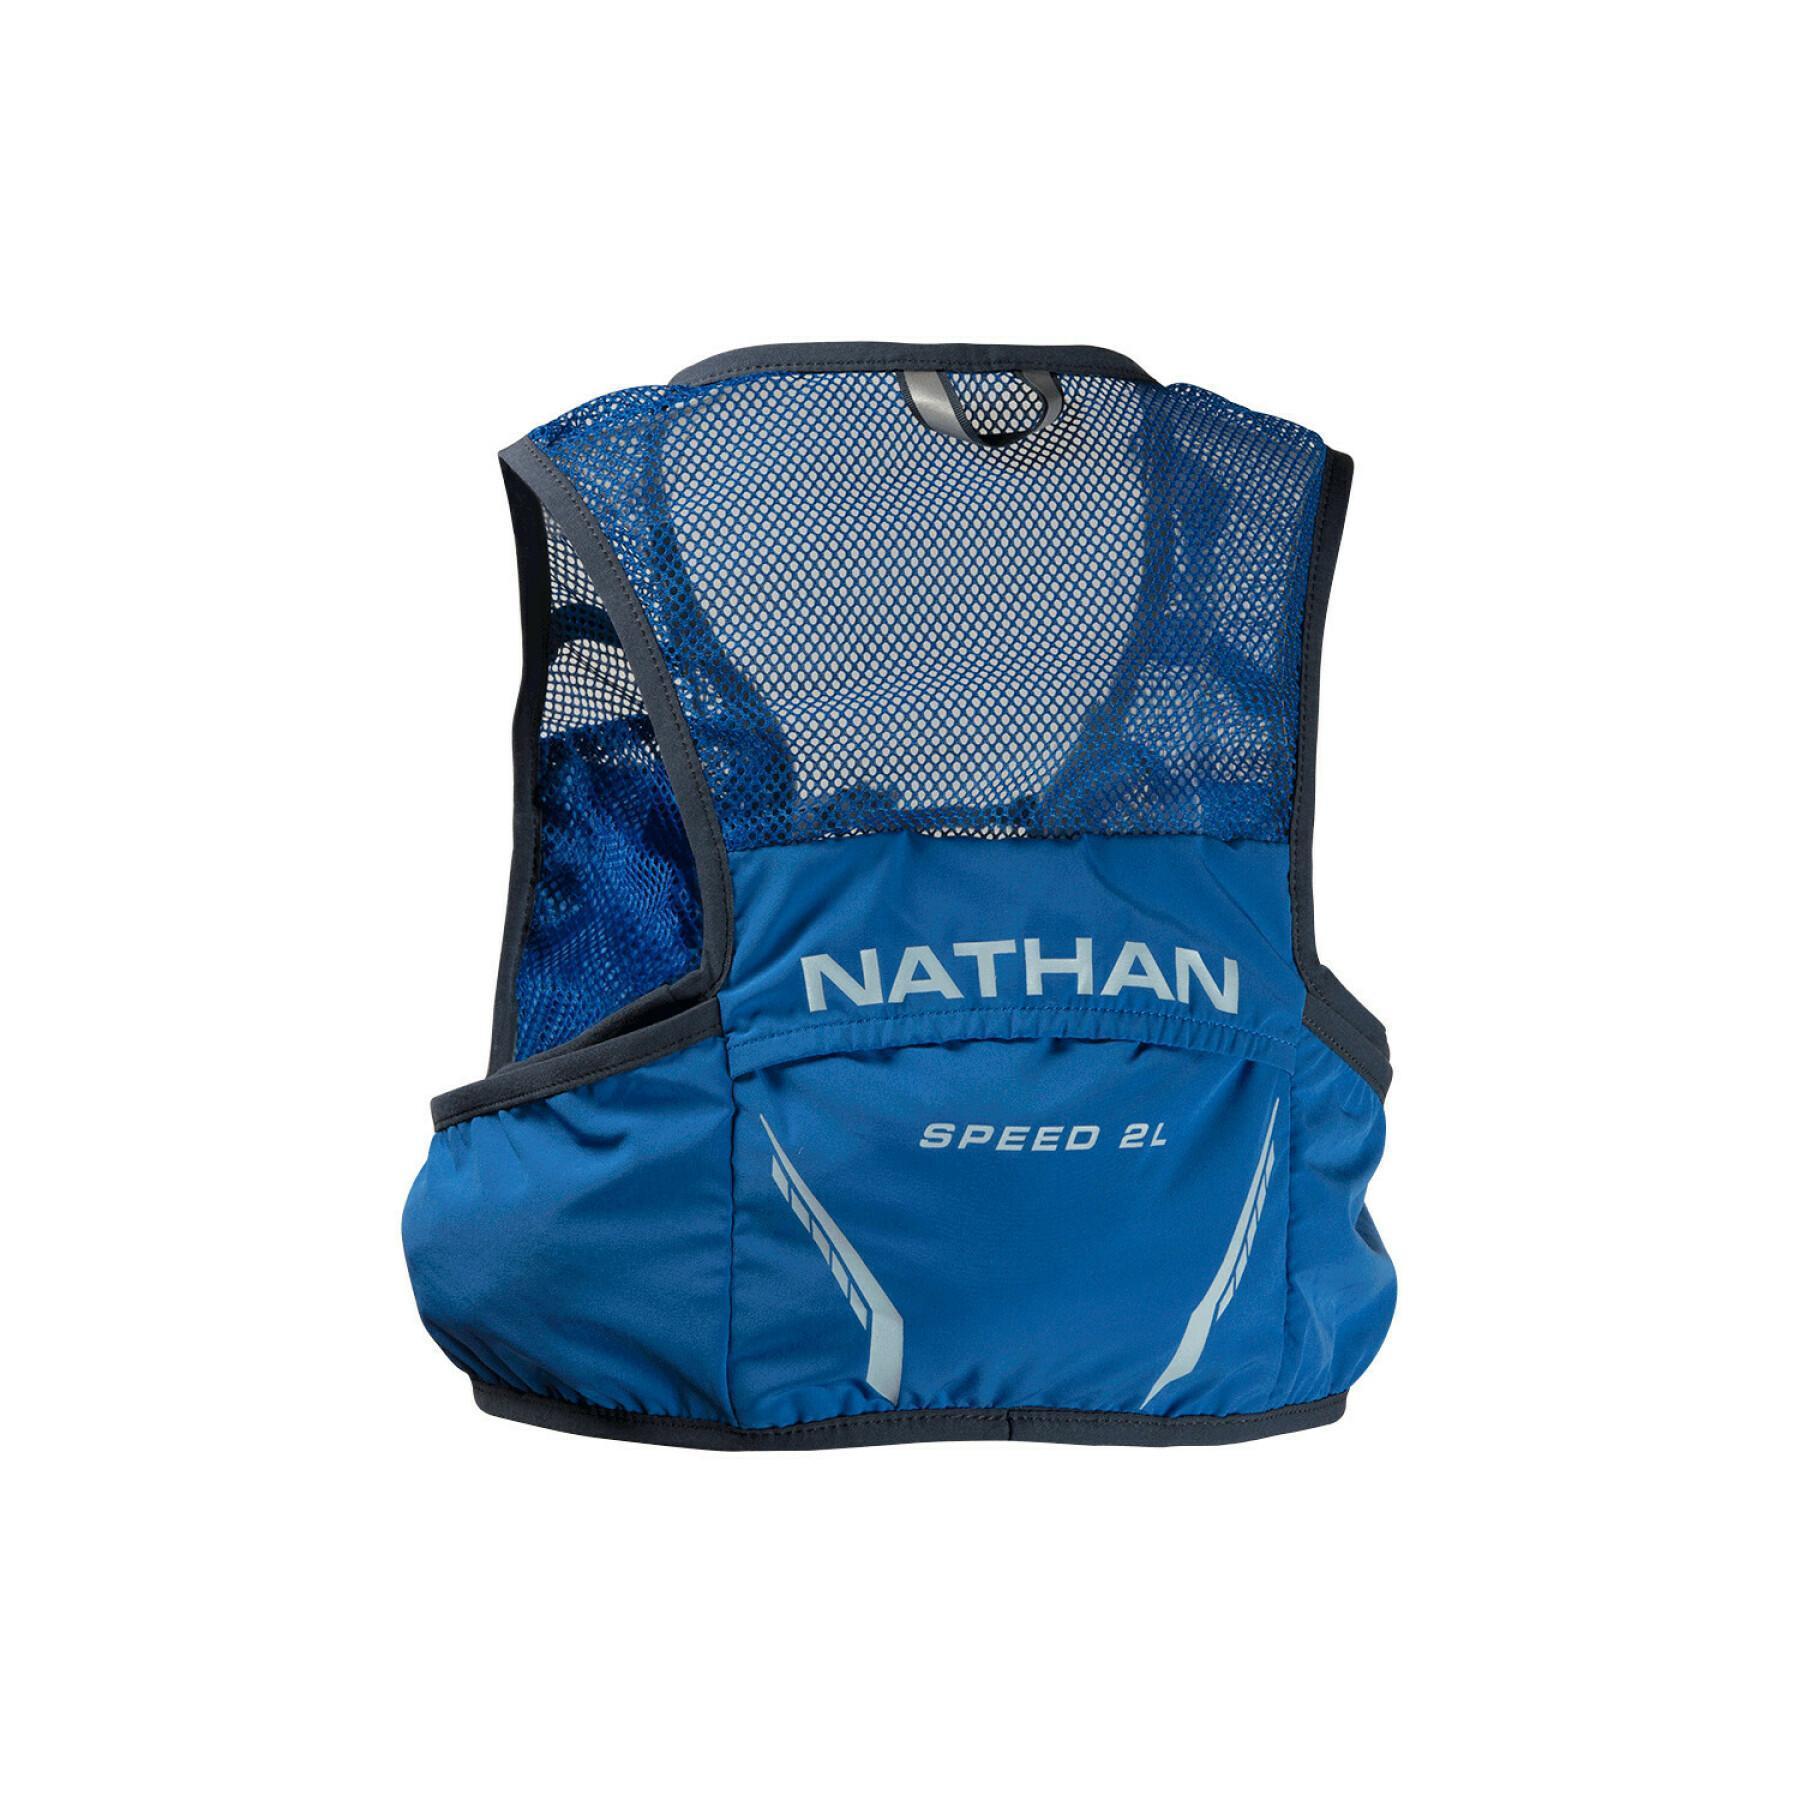 Colete de hidratação Nathan Vapor Speed 2L